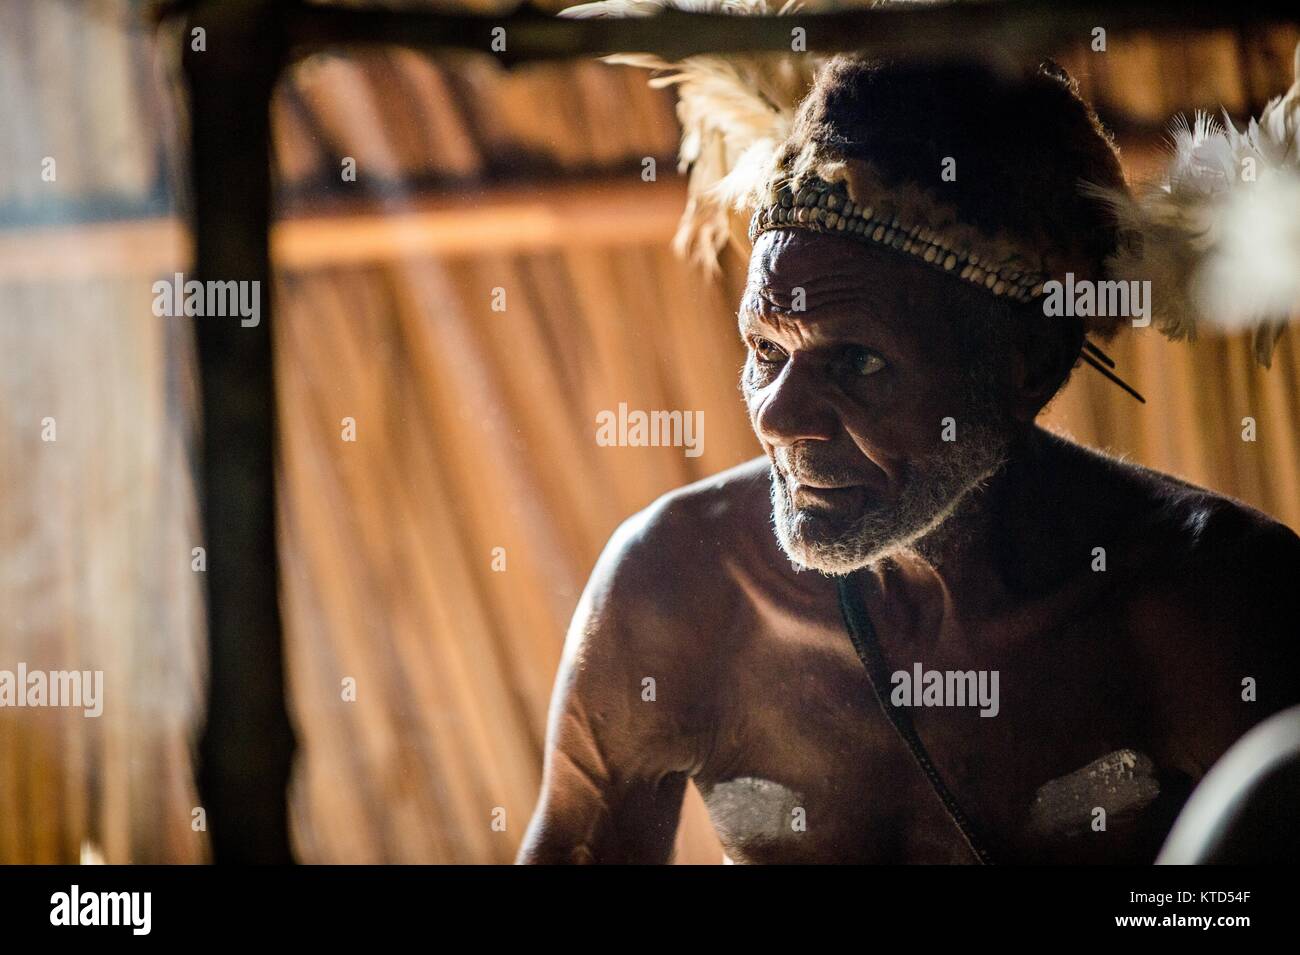 ATSY YOUW DORF, Bezirk, ASMAT REGION, IRIAN JAYA, Neuguinea, Indonesien - 23. MAI 2016: Porträt eines Mannes aus dem Volk der Asmat Menschen mit Rit Stockfoto